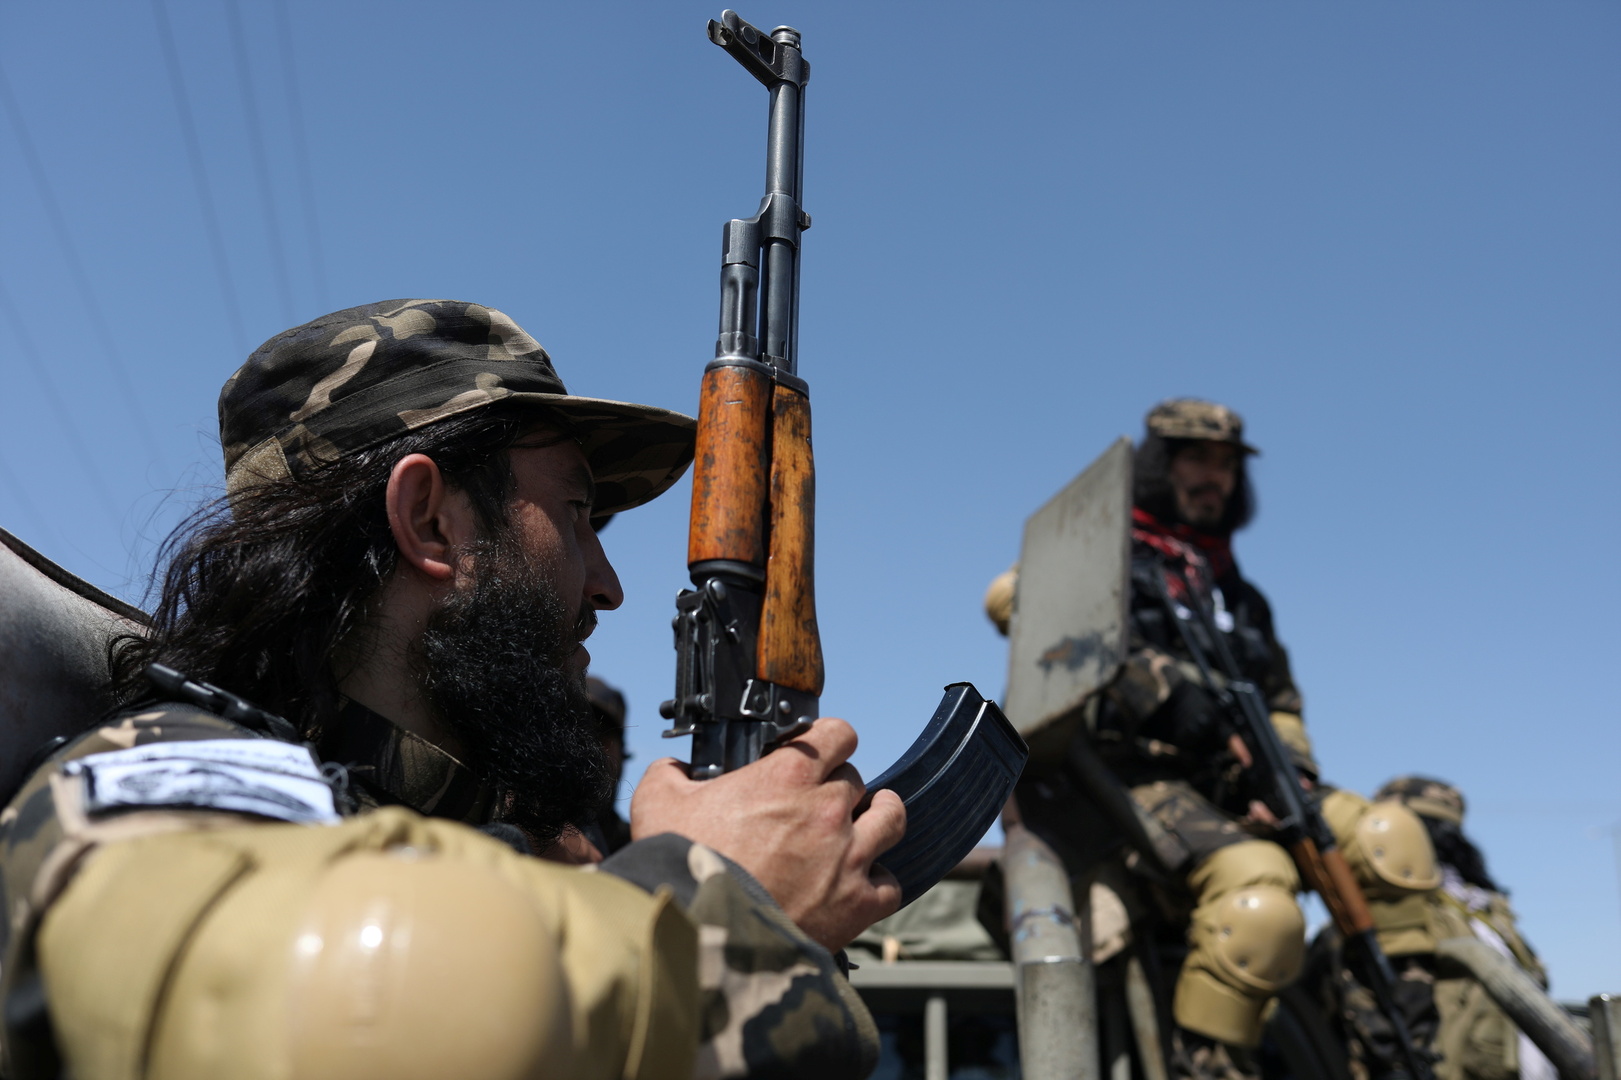 مقاتلو طالبان بحلة جديدة على غير المألوف (صور)